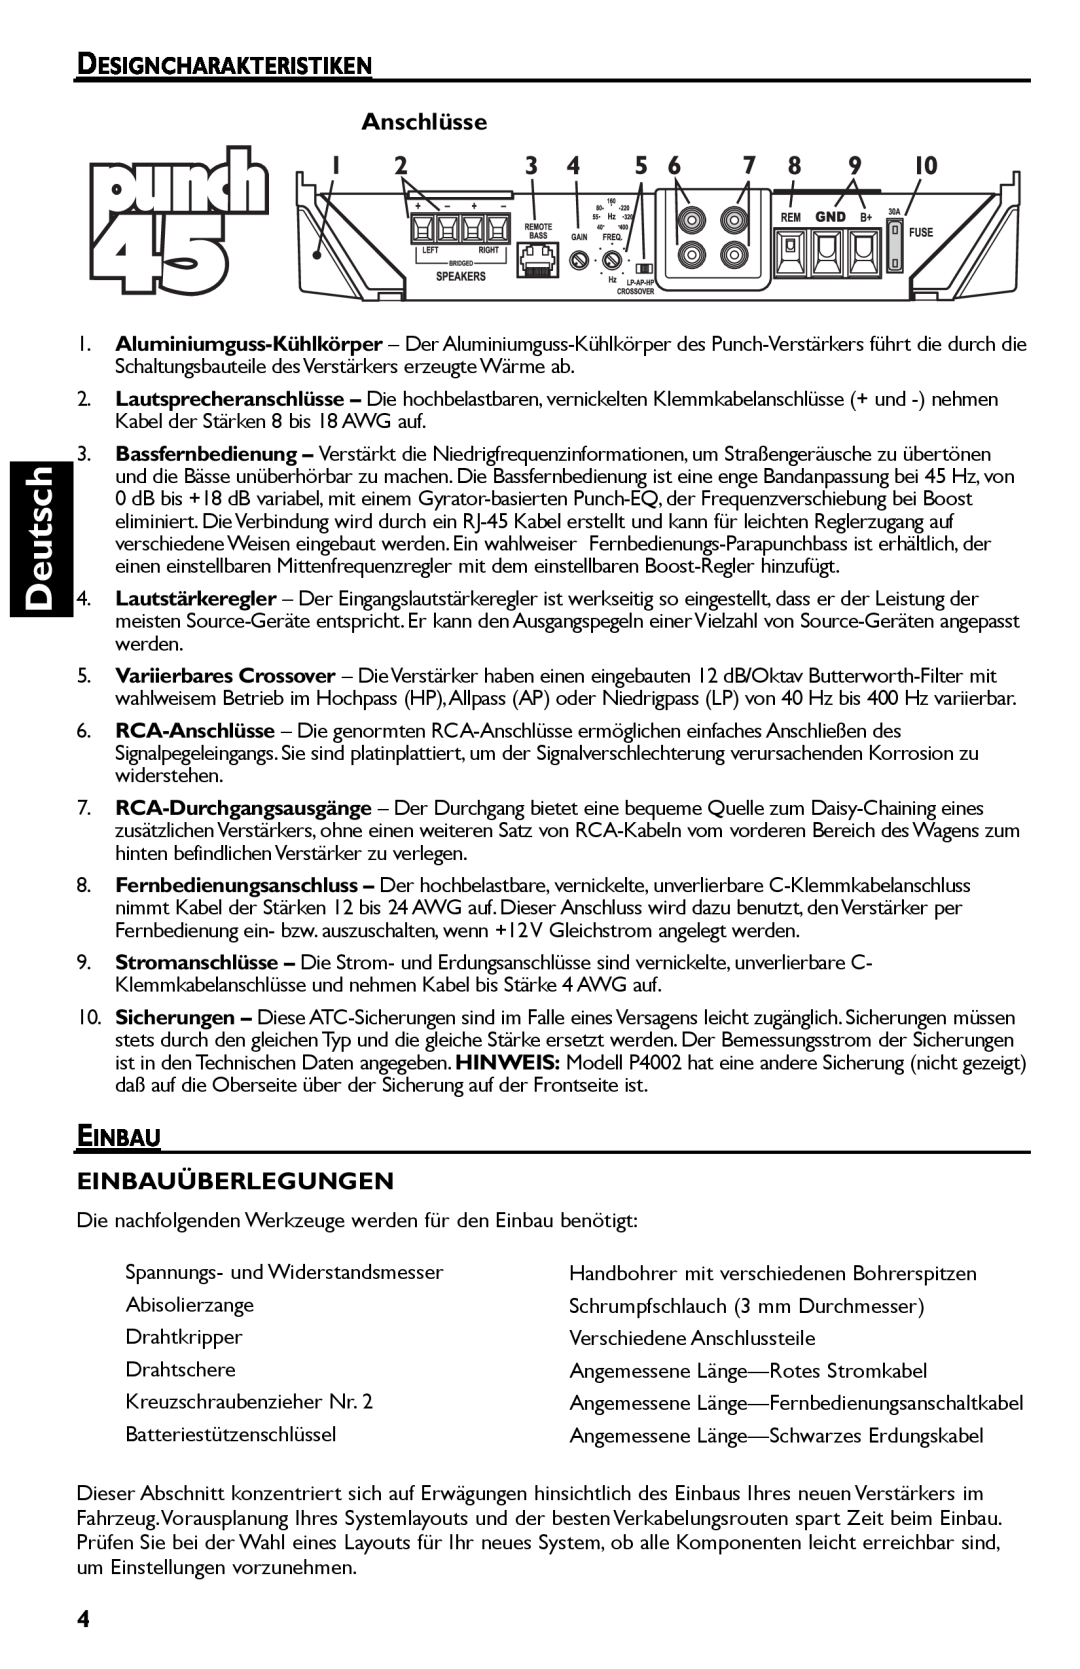 Rockford Fosgate Punch 45 manual Deutsch, DESIGNCHARAKTERISTIKEN Anschlüsse, Einbau Einbauüberlegungen 